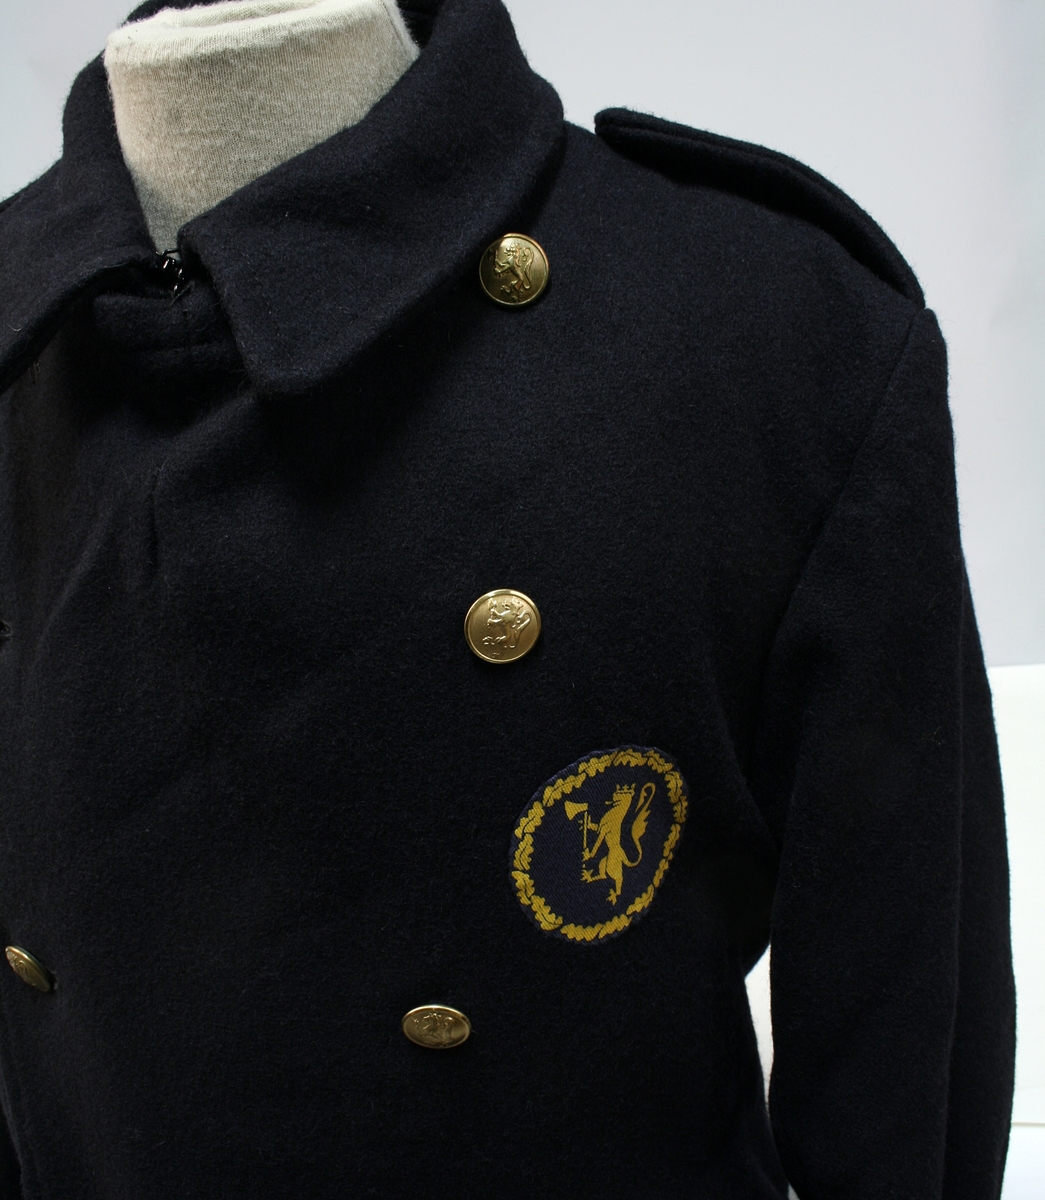 Dobbeltkneppet frakk med politimerke sydd på brystet.